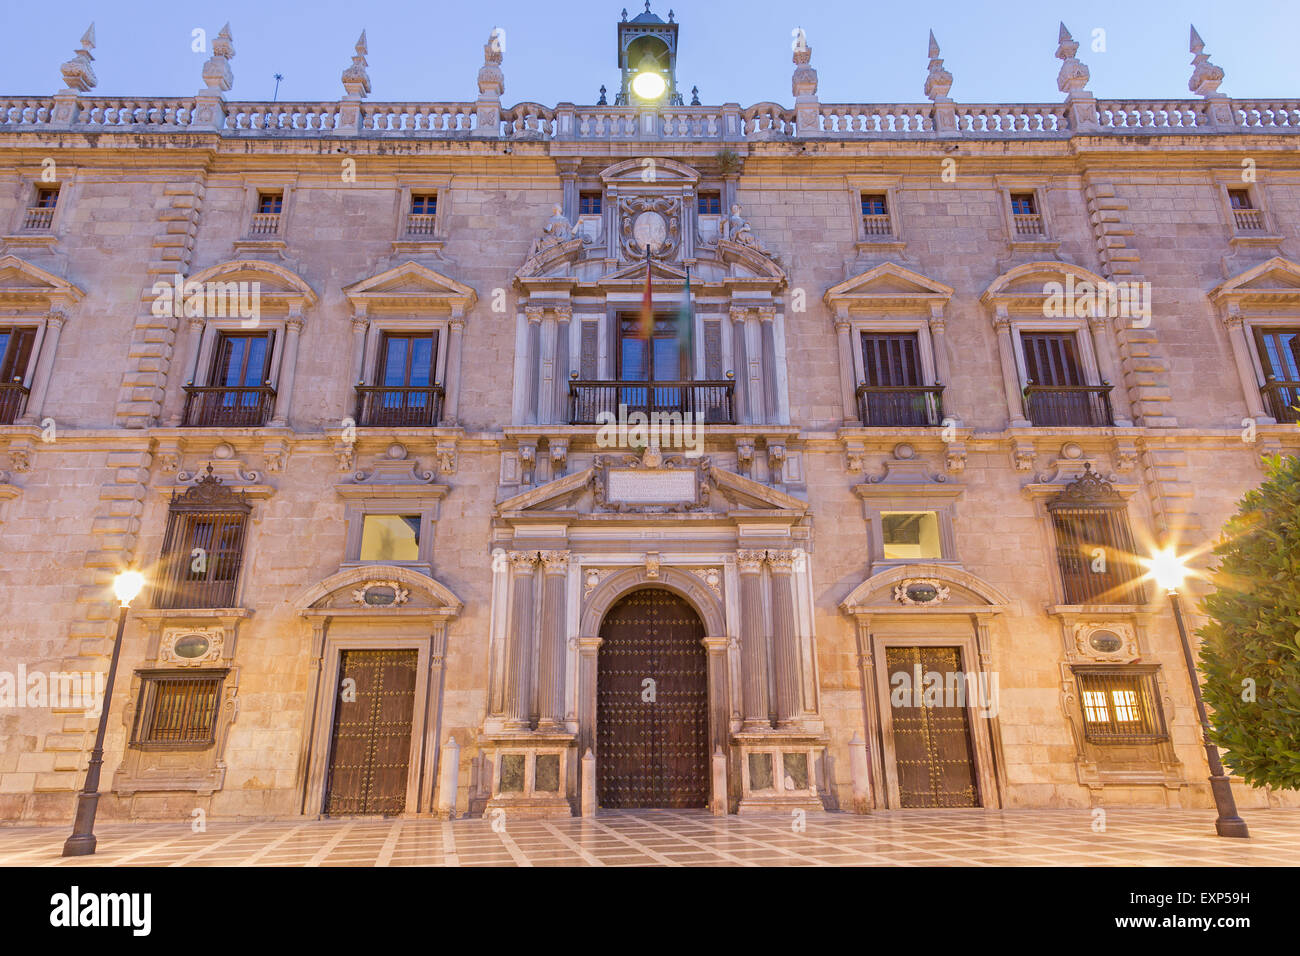 GRANADA, Spagna - 29 Maggio 2015: la facciata di Palazzo Real Chancilleria de Granada sulla St. Ann square al crepuscolo. Foto Stock